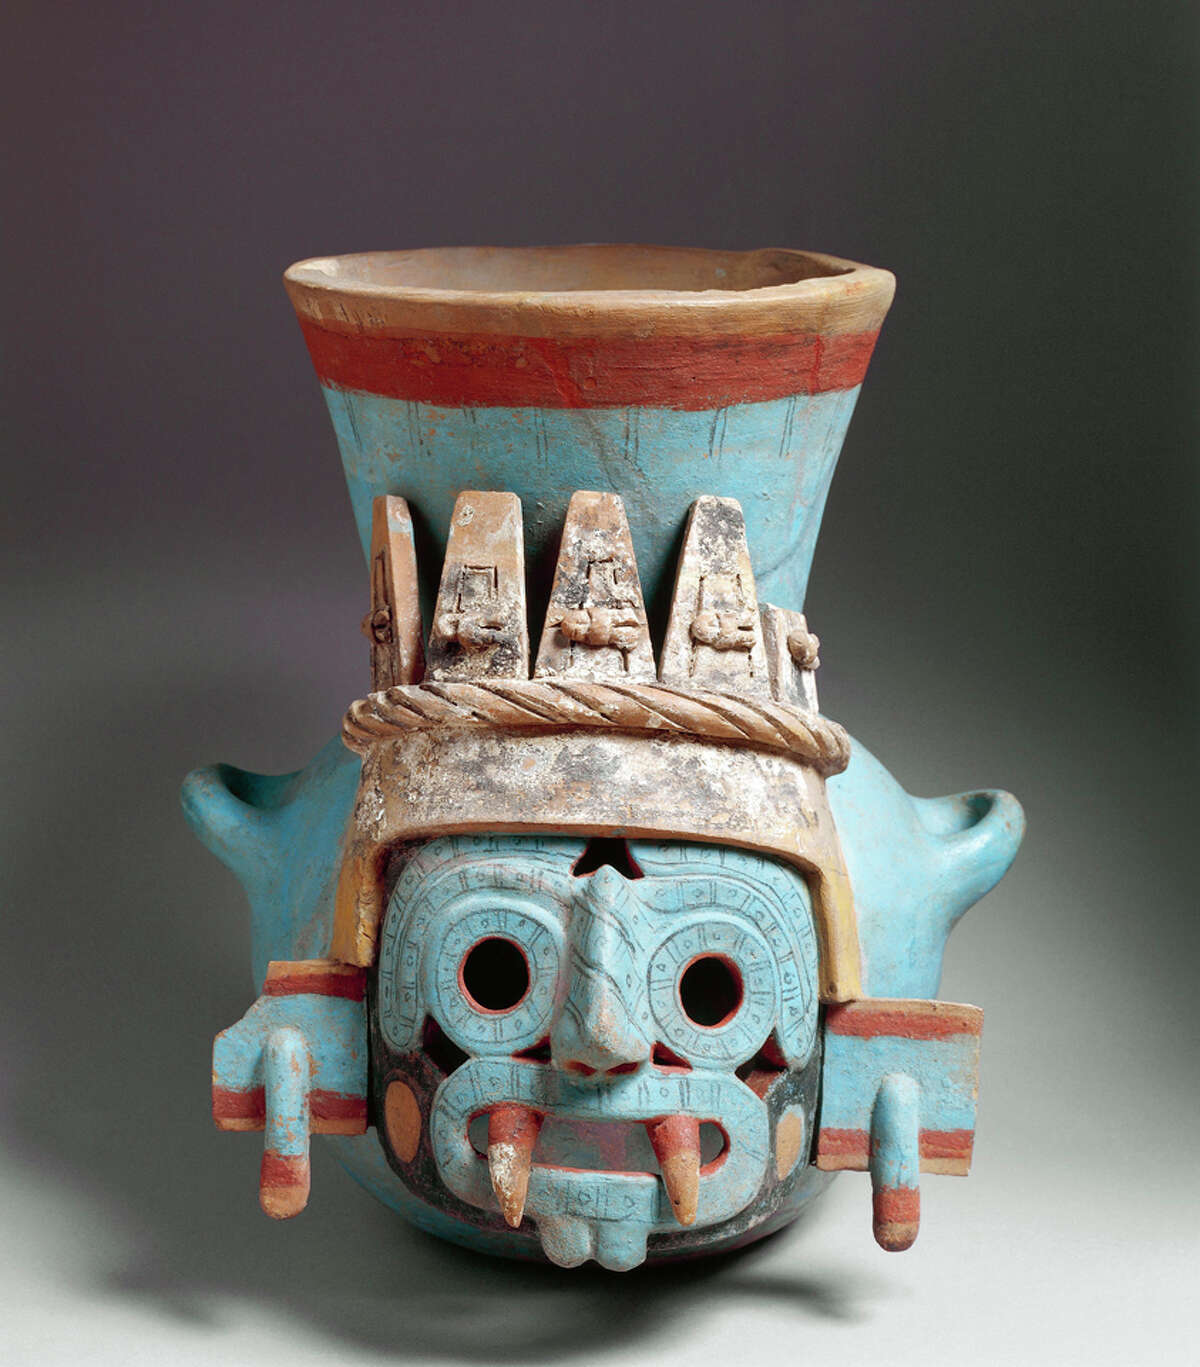 aztec civilization